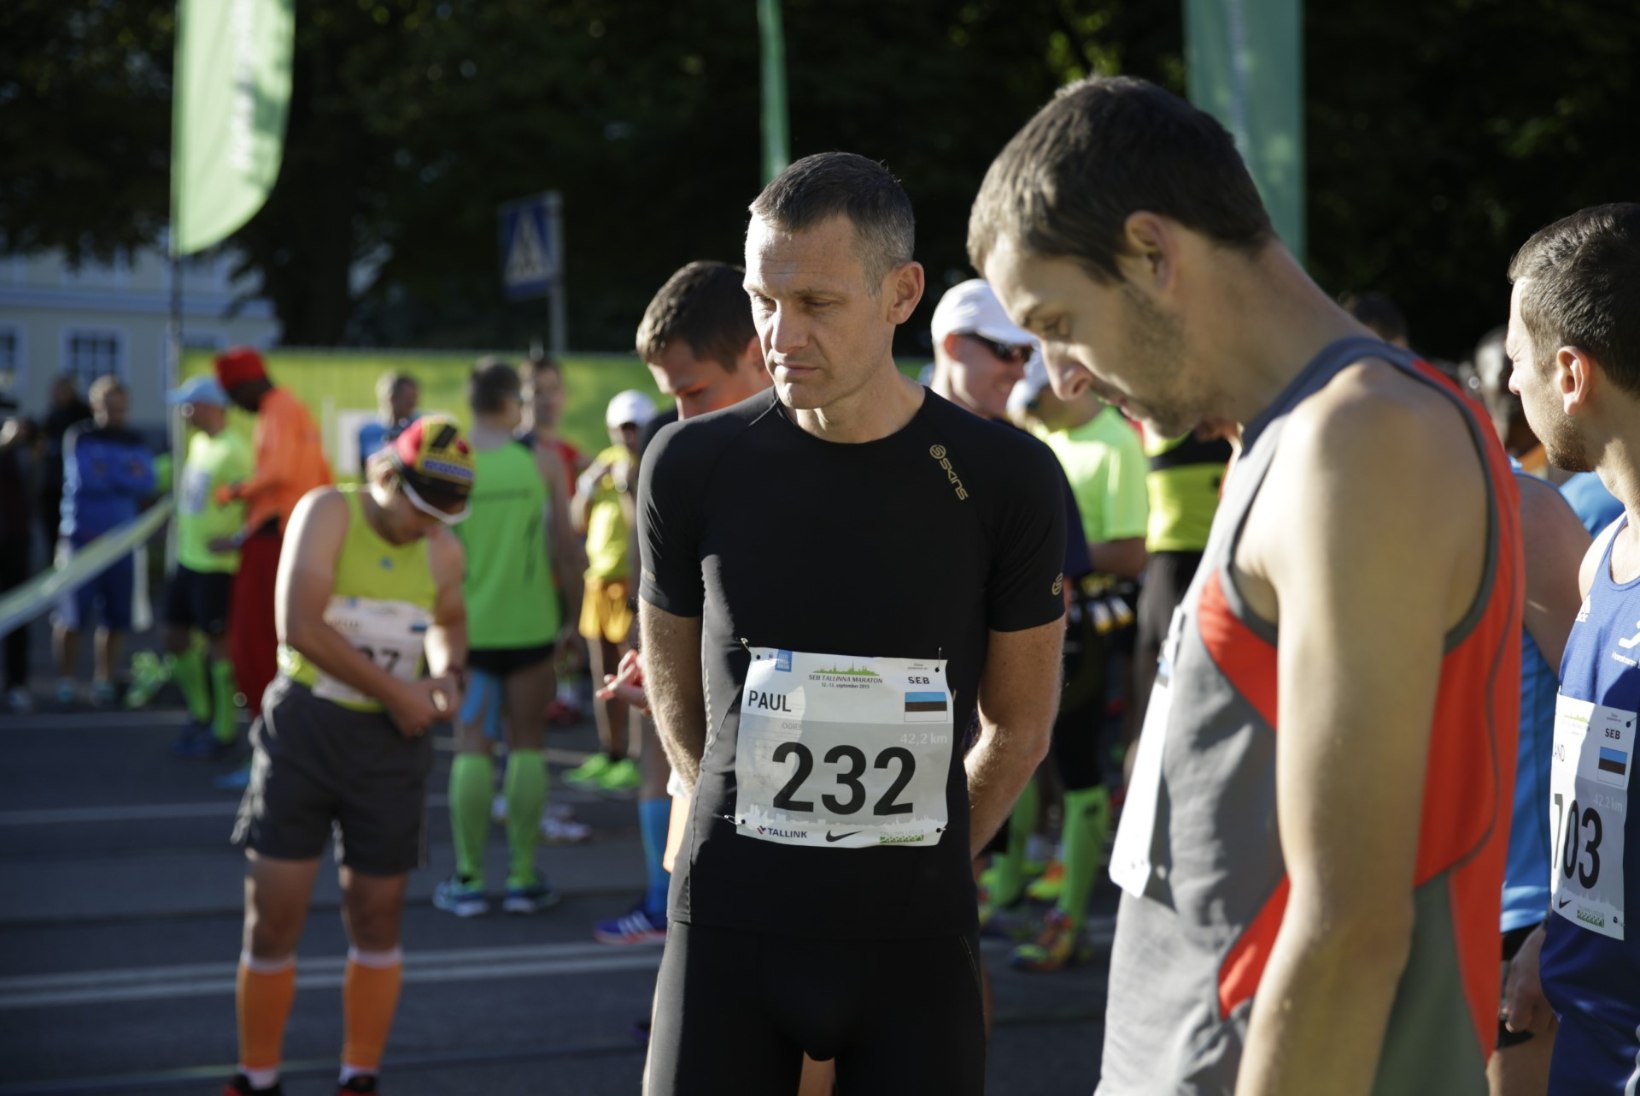 GALERII | Kas sinu sõber läks Tallinna Maratoni jooksma? Vaata Õhtulehe galeriid ja saa teada!